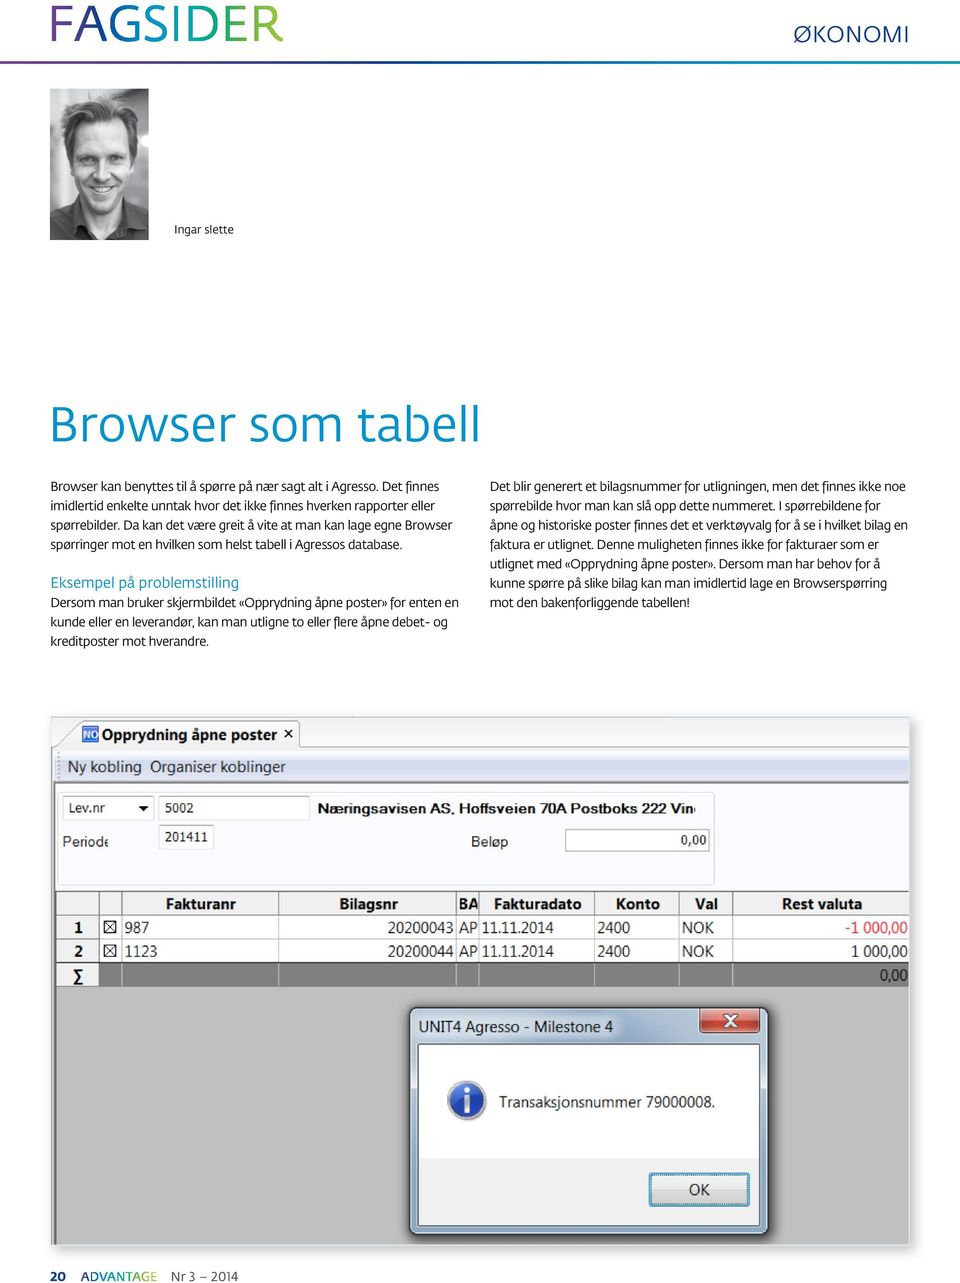 Da kan det være greit å vite at man kan lage egne Browser spørringer mot en hvilken som helst tabell i Agressos database.